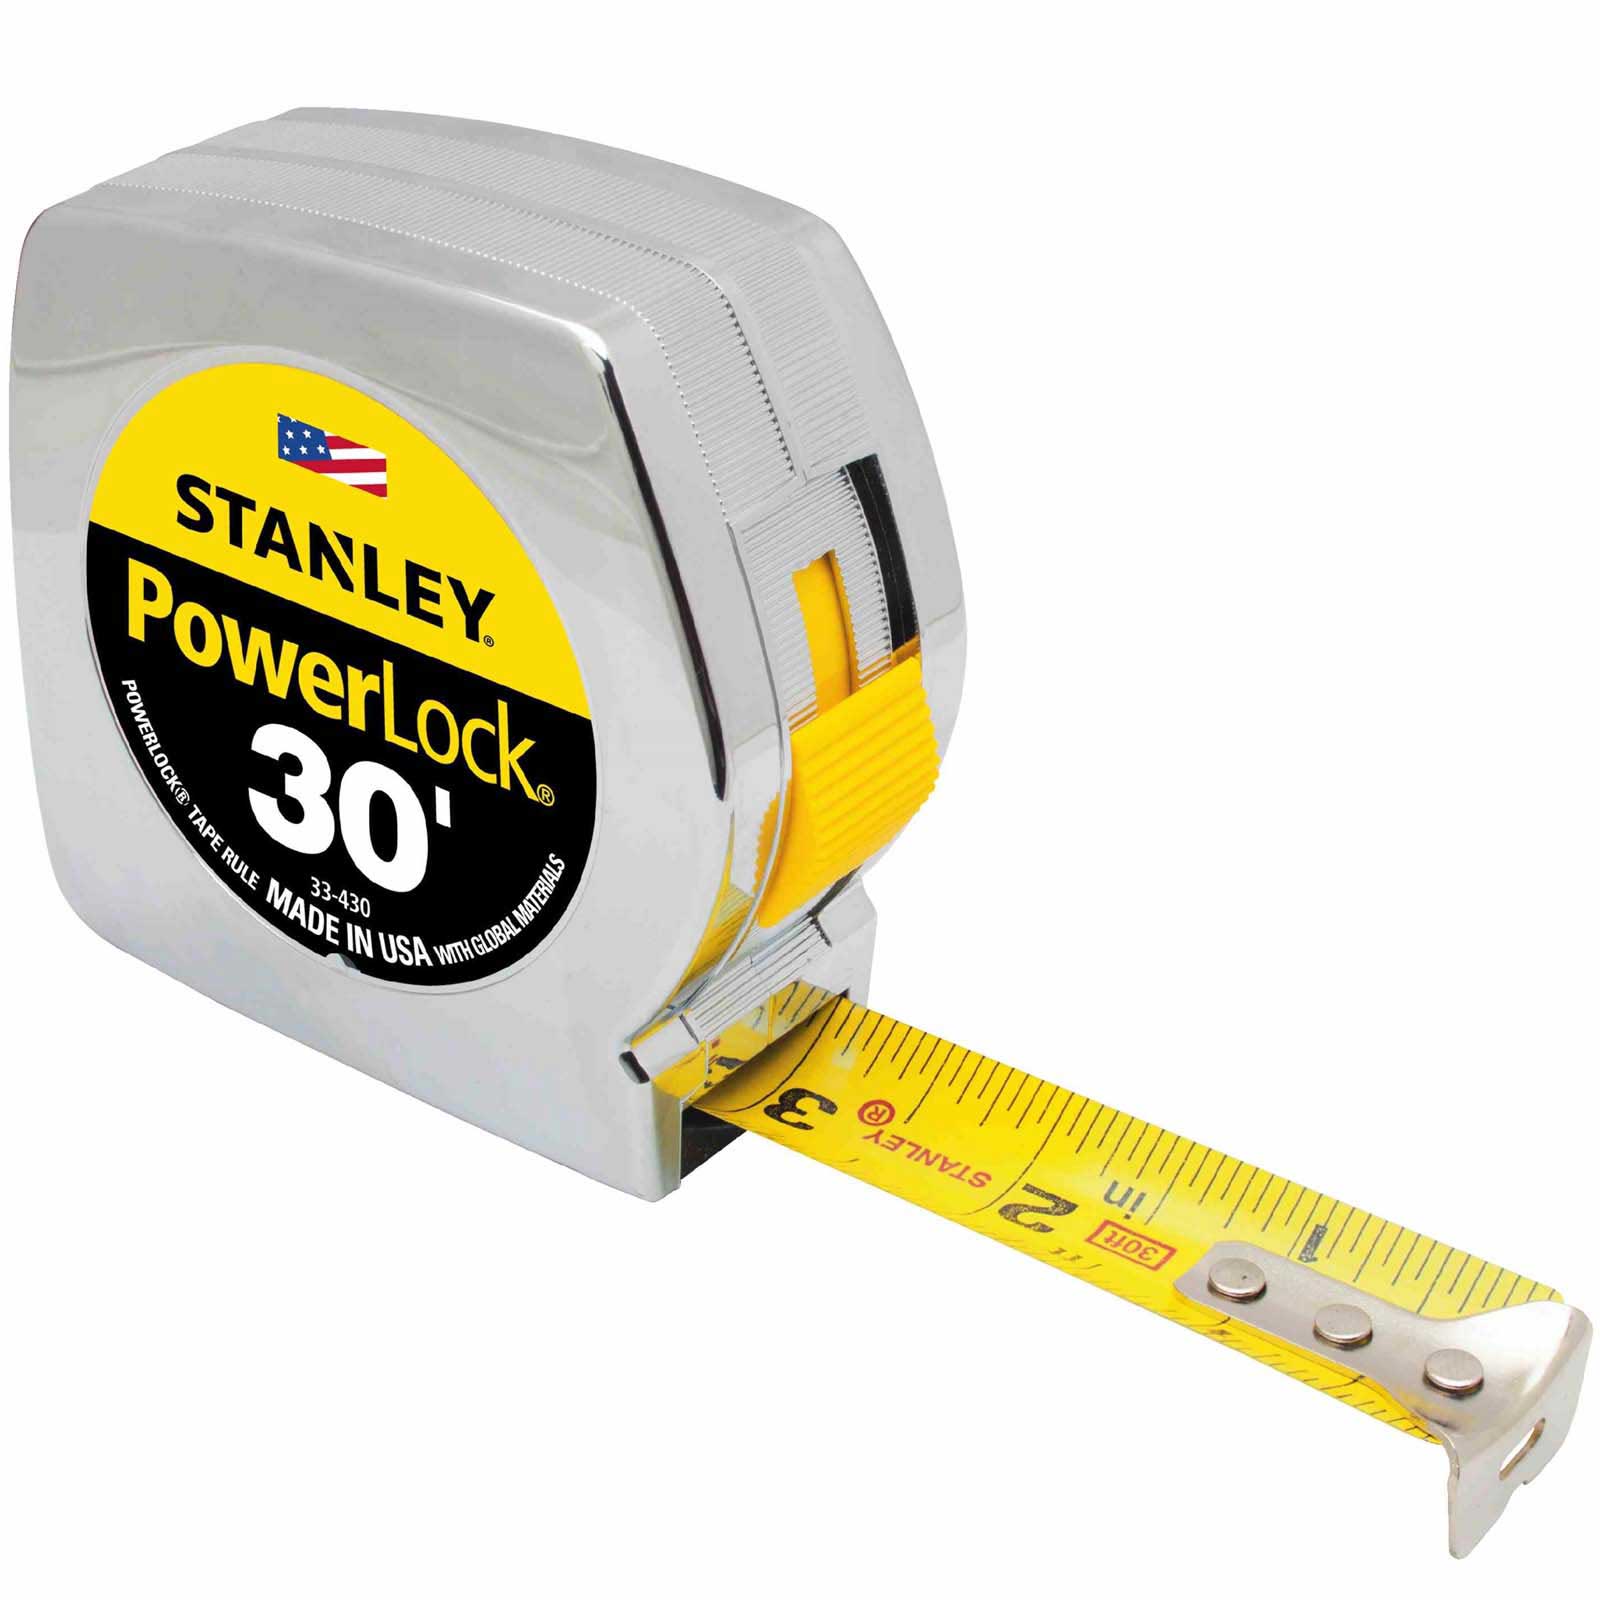 Stanley PowerLock Tape Measure